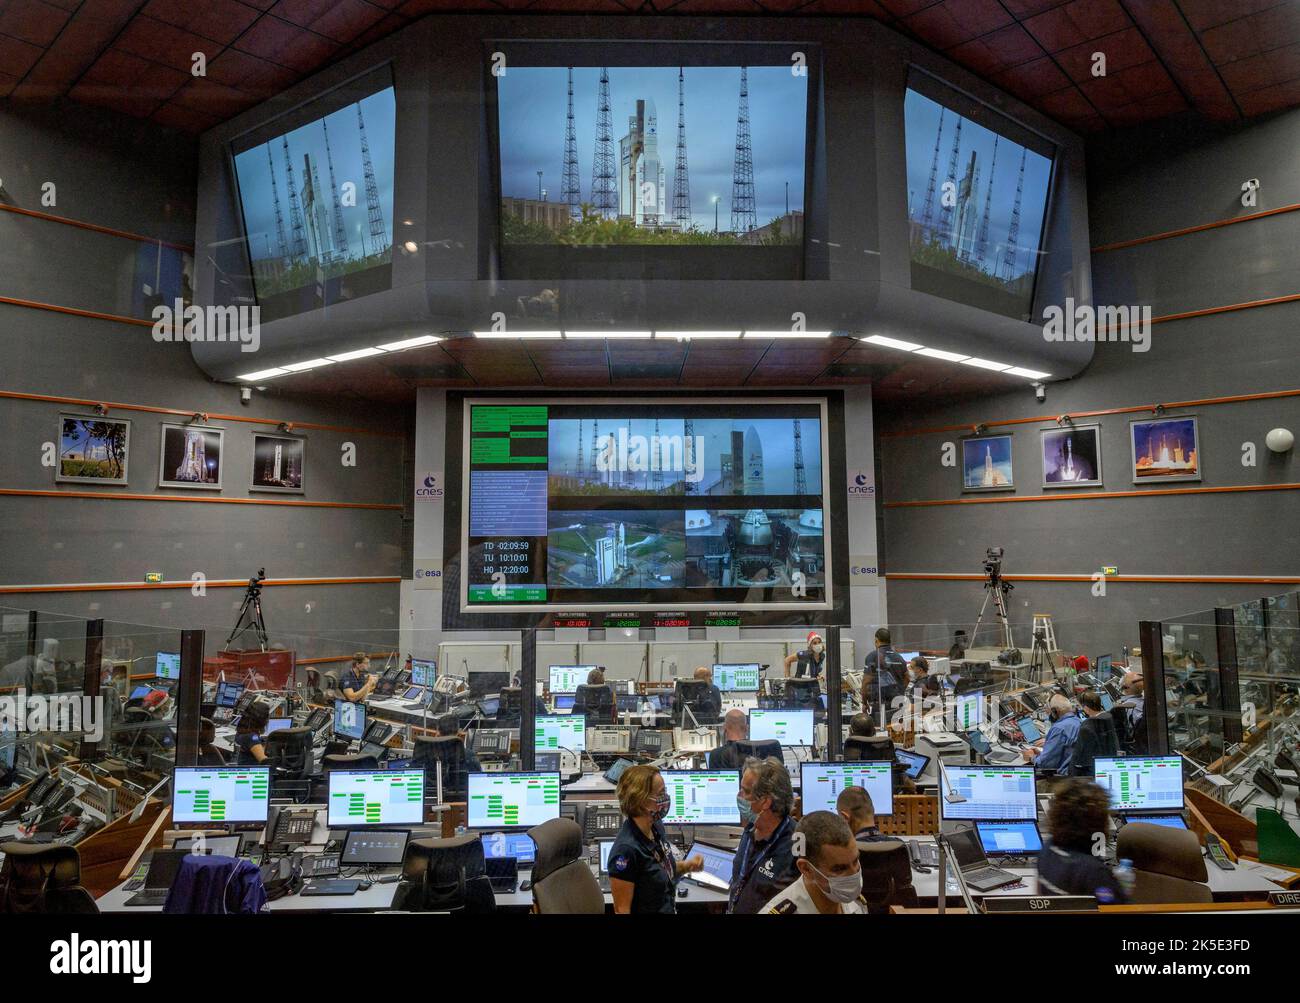 Startteams überwachen den Countdown bis zum Start der Ariane 5-Rakete mit dem James Webb Space Telescope am 25. Dezember 2021 im Jupiter Center im Guayana Space Center in Kourou, Französisch-Guayana. Das James Webb Weltraumteleskop (manchmal auch JWST oder Webb genannt) ist ein großes Infrarotteleskop mit einem Primärspiegel von 21,3 Fuß (6,5 Meter). Das Observatorium wird jede Phase der kosmischen Geschichte untersuchen - von unserem Sonnensystem bis zu den entferntesten beobachtbaren Galaxien im frühen Universum. Bild von Bill Ingalls, dem Senior-Fotografen der NASA, / Credit B.Ingalls/NASA. Nur für redaktionelle Zwecke Stockfoto